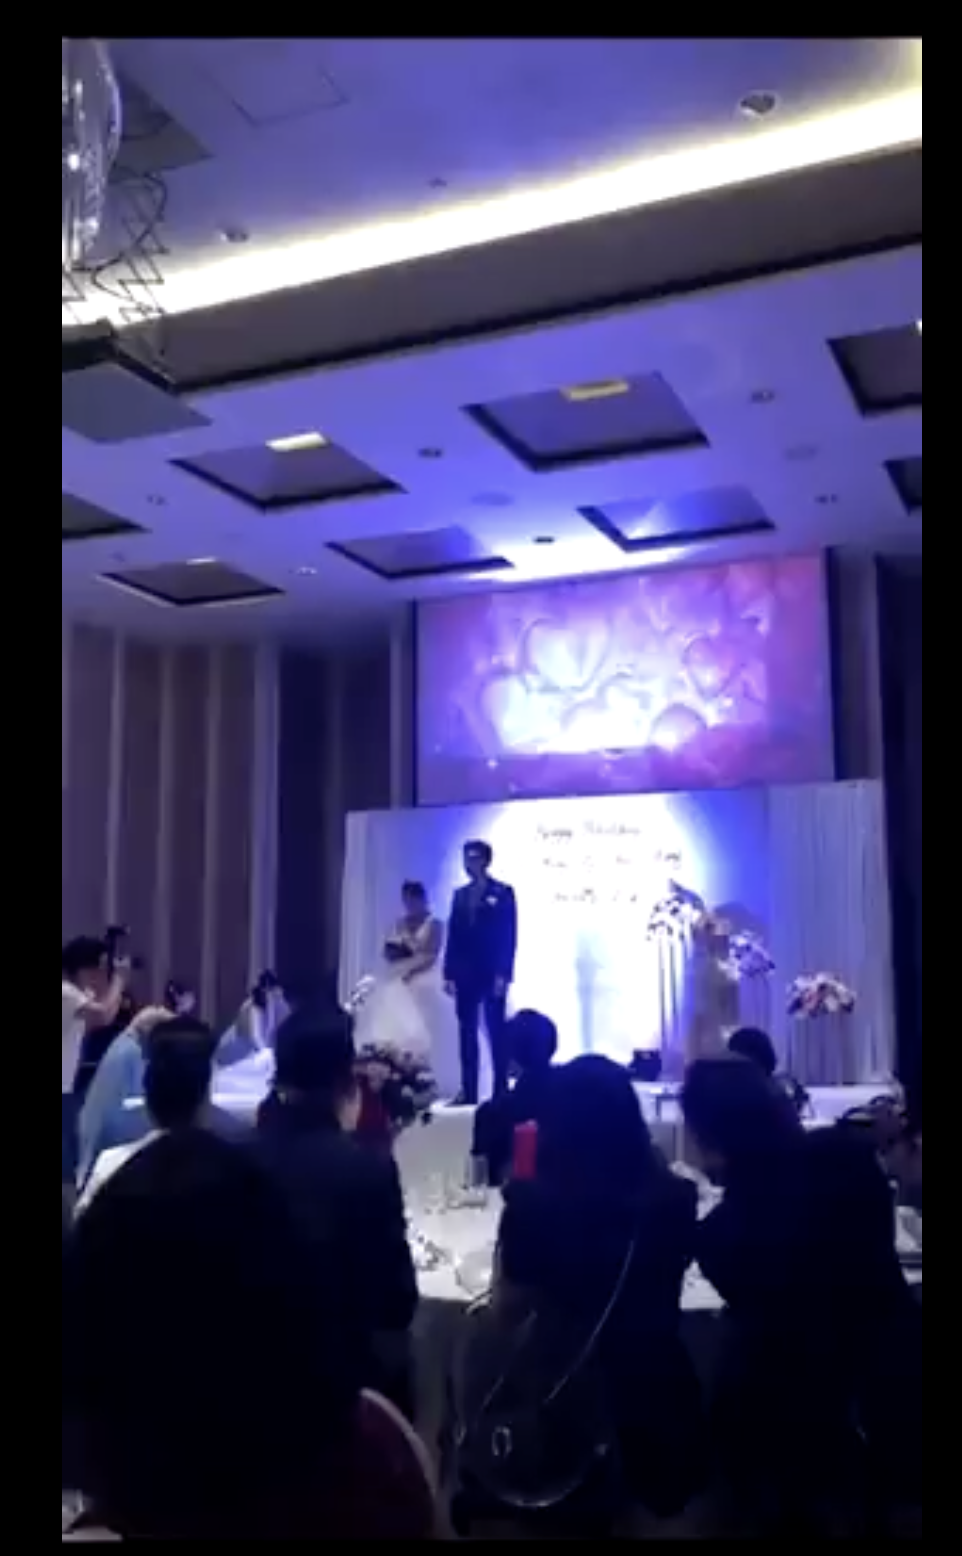 Die Frischvermählten stehen gemeinsam auf der Bühne. | Quelle: twitter.com/TuanConCom1